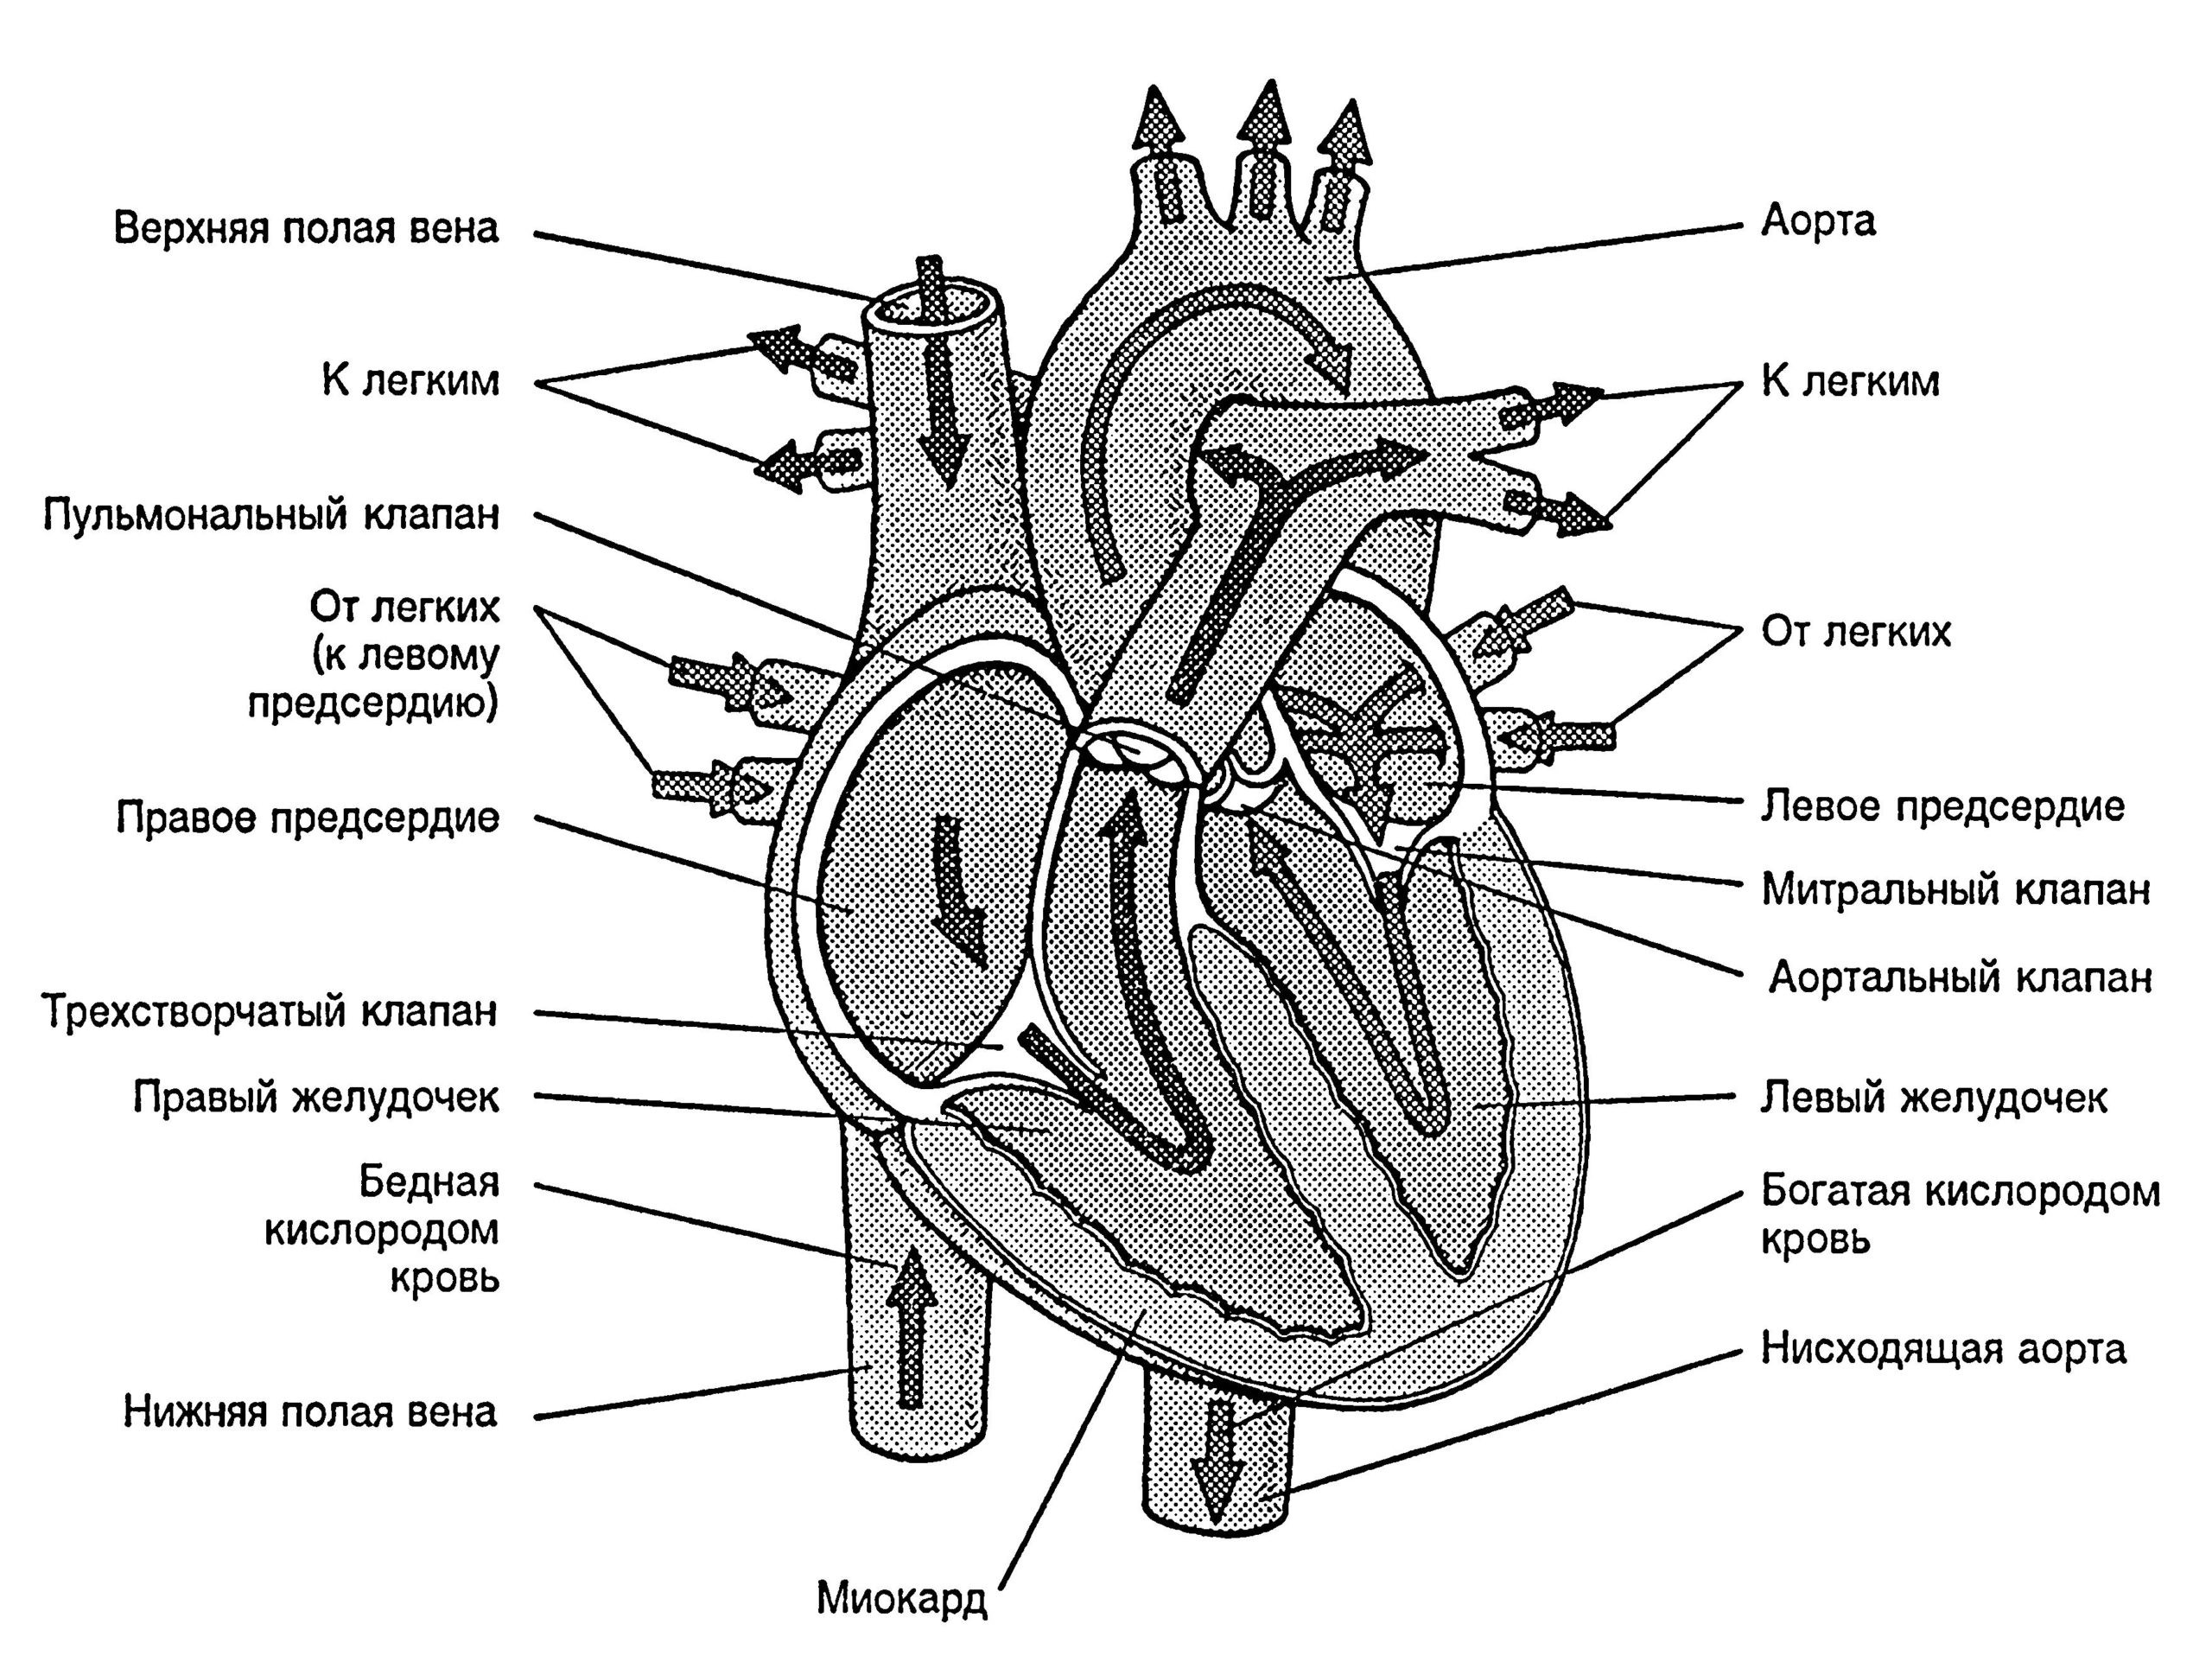 Какая кровь содержится в левой части сердца. Верхняя полая Вена анатомия сердца. Нижняя полая Вена анатомия сердца. Строение сердца верхняя полая Вена. Верхняя полая Вена схема с обозначениями.